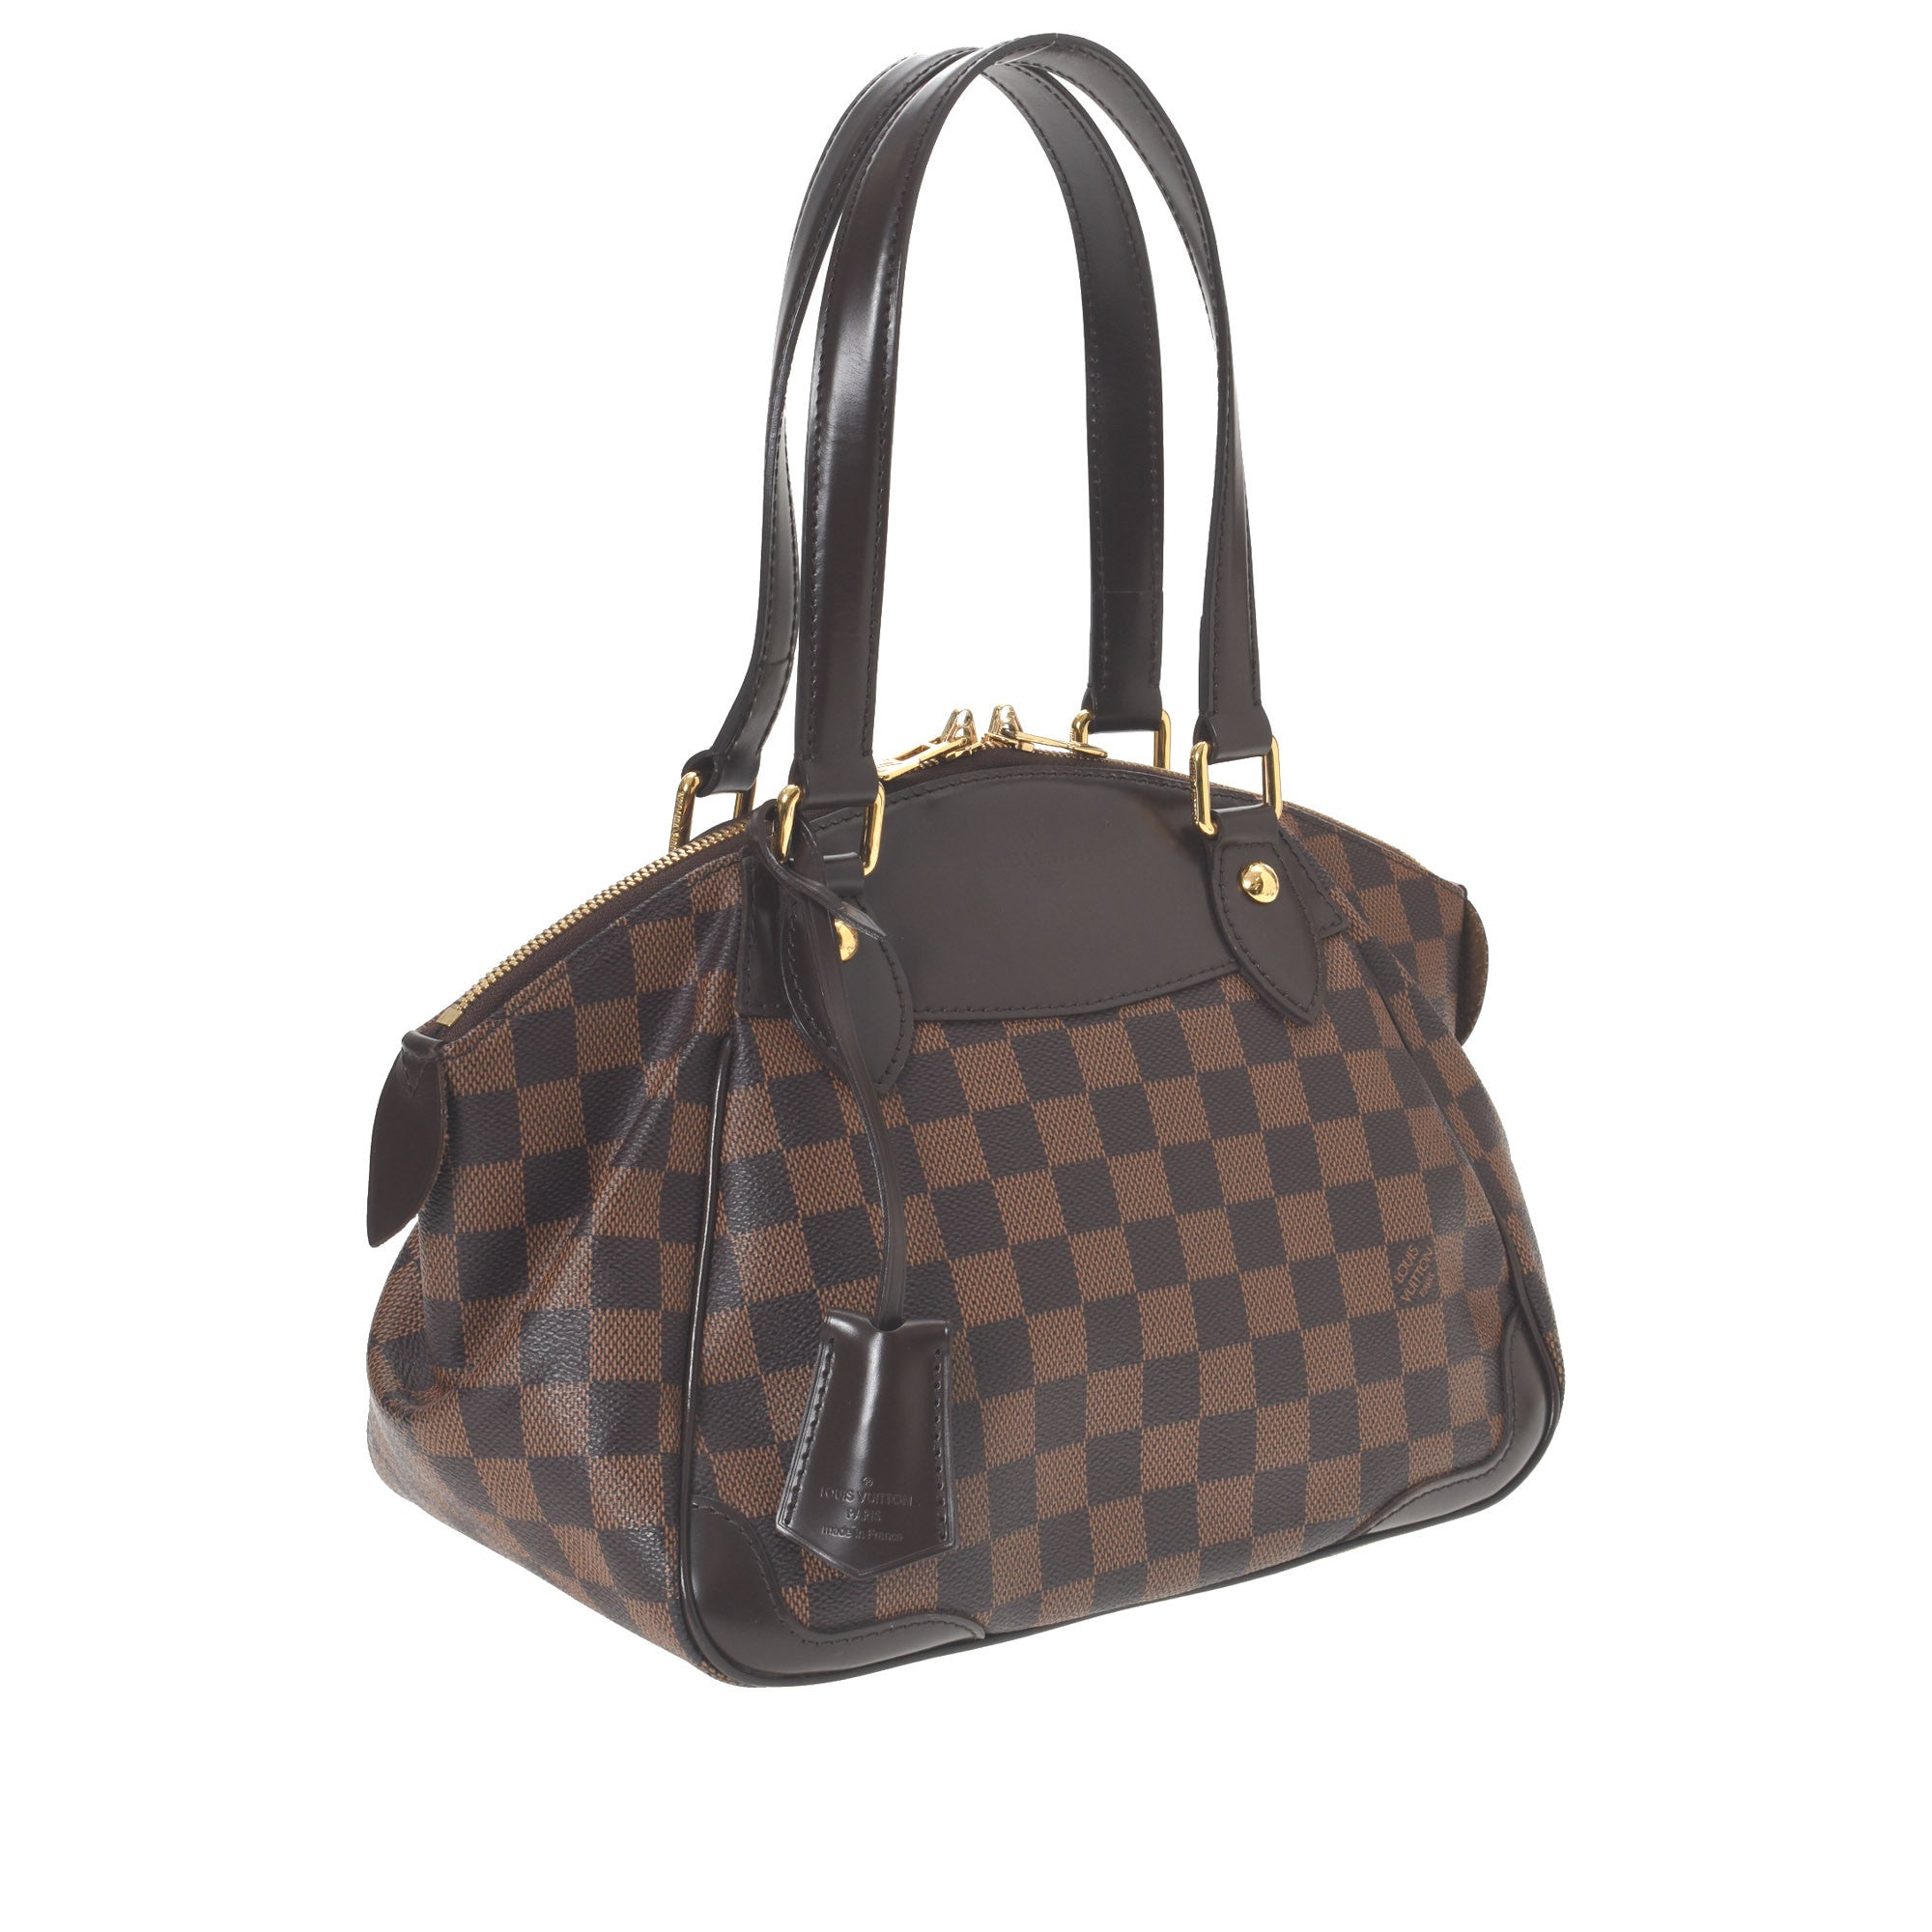 Louis Vuitton, Bags, Authentic Louis Vuitton Verona Pm Size